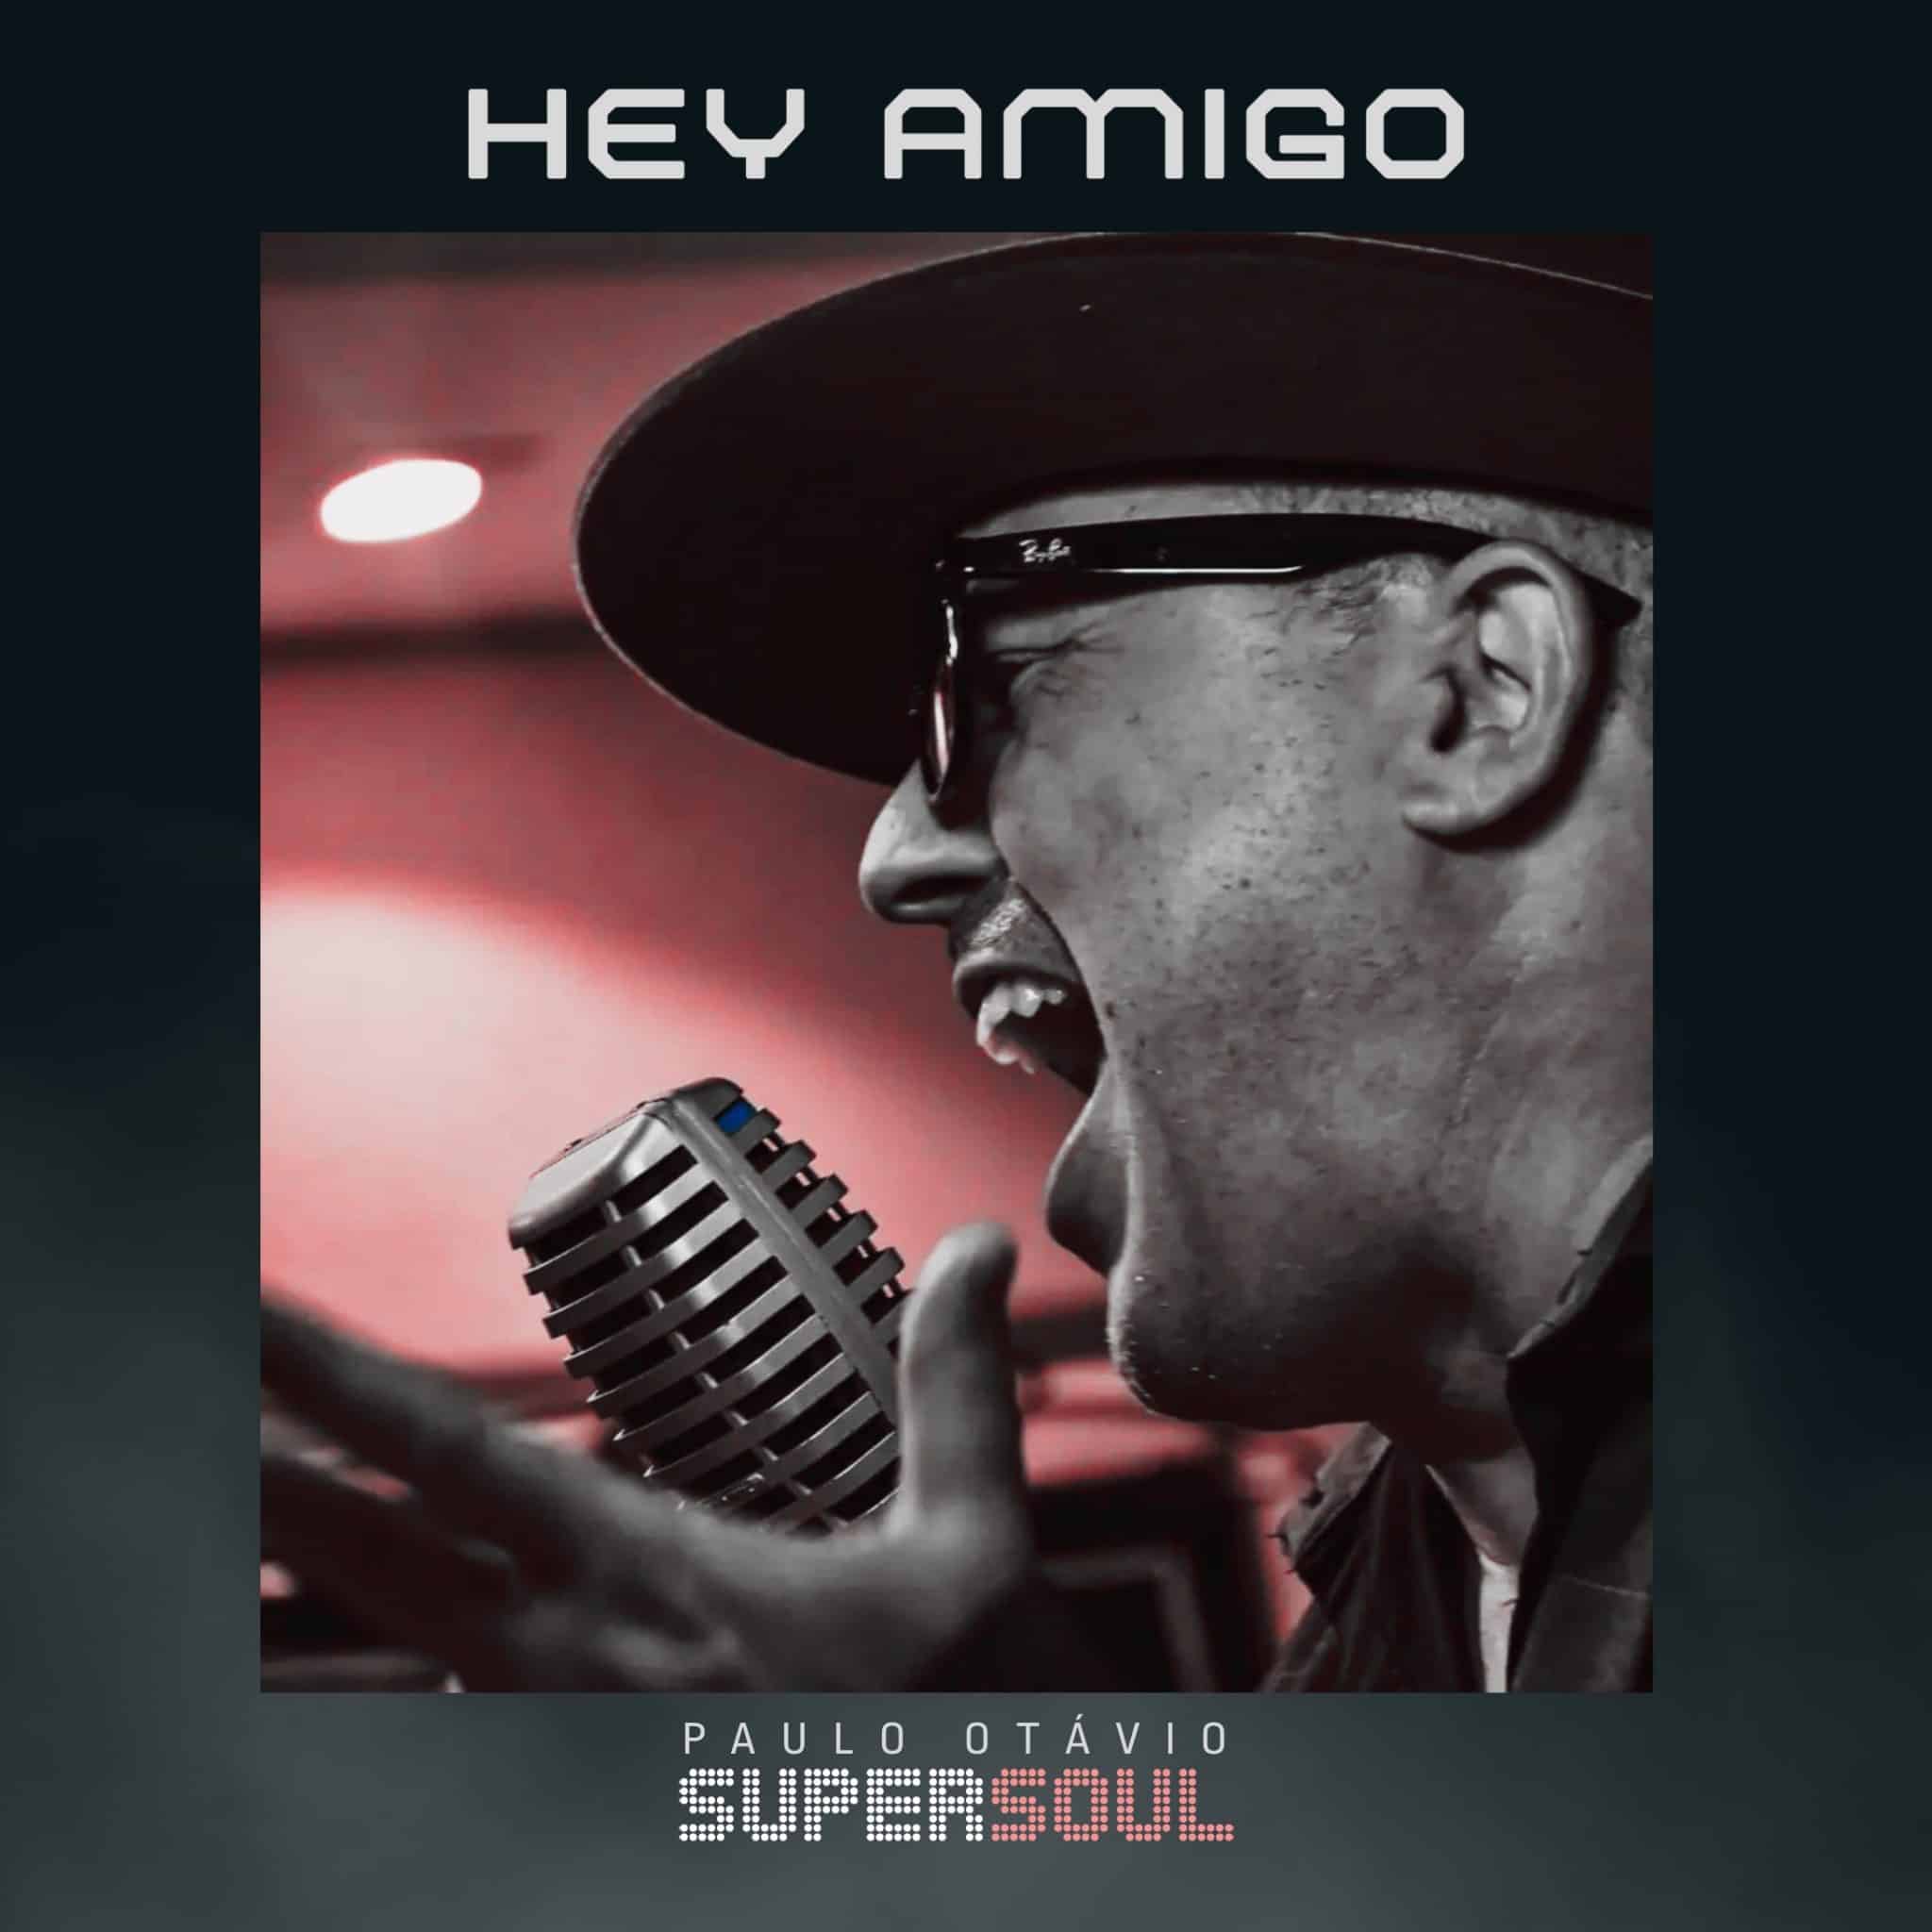 revistaprosaversoearte.com - Paulo Otávio Supersoul está de volta com o single 'Hey Amigo'